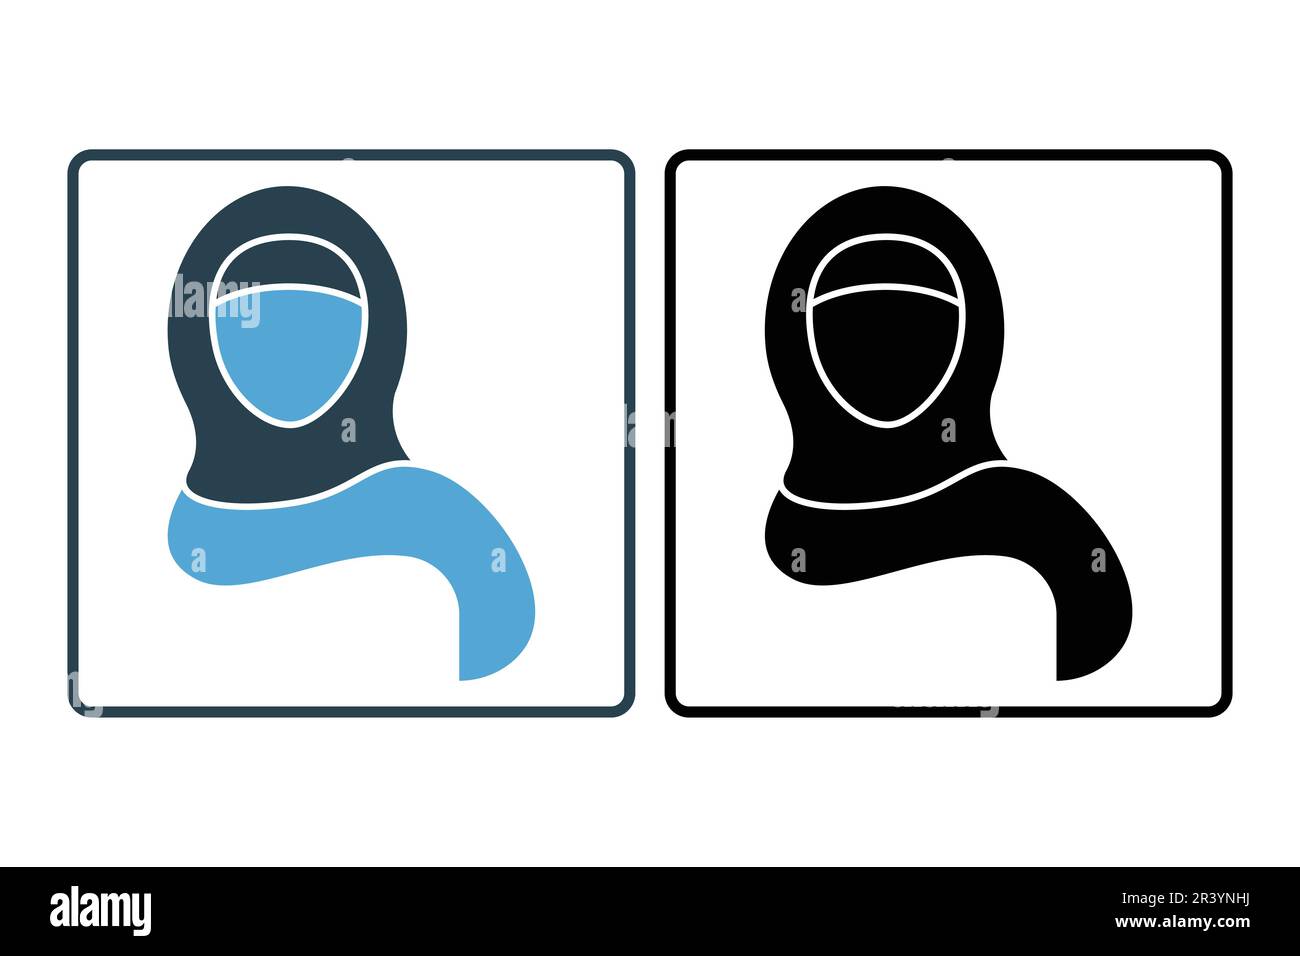 Icône de femme arabe saoudienne. femme du moyen-Orient en foulard, hijab vêtements traditionnels de l'Islam arabe utilisés par une fille musulmane. Style icône unie. Simpl Illustration de Vecteur